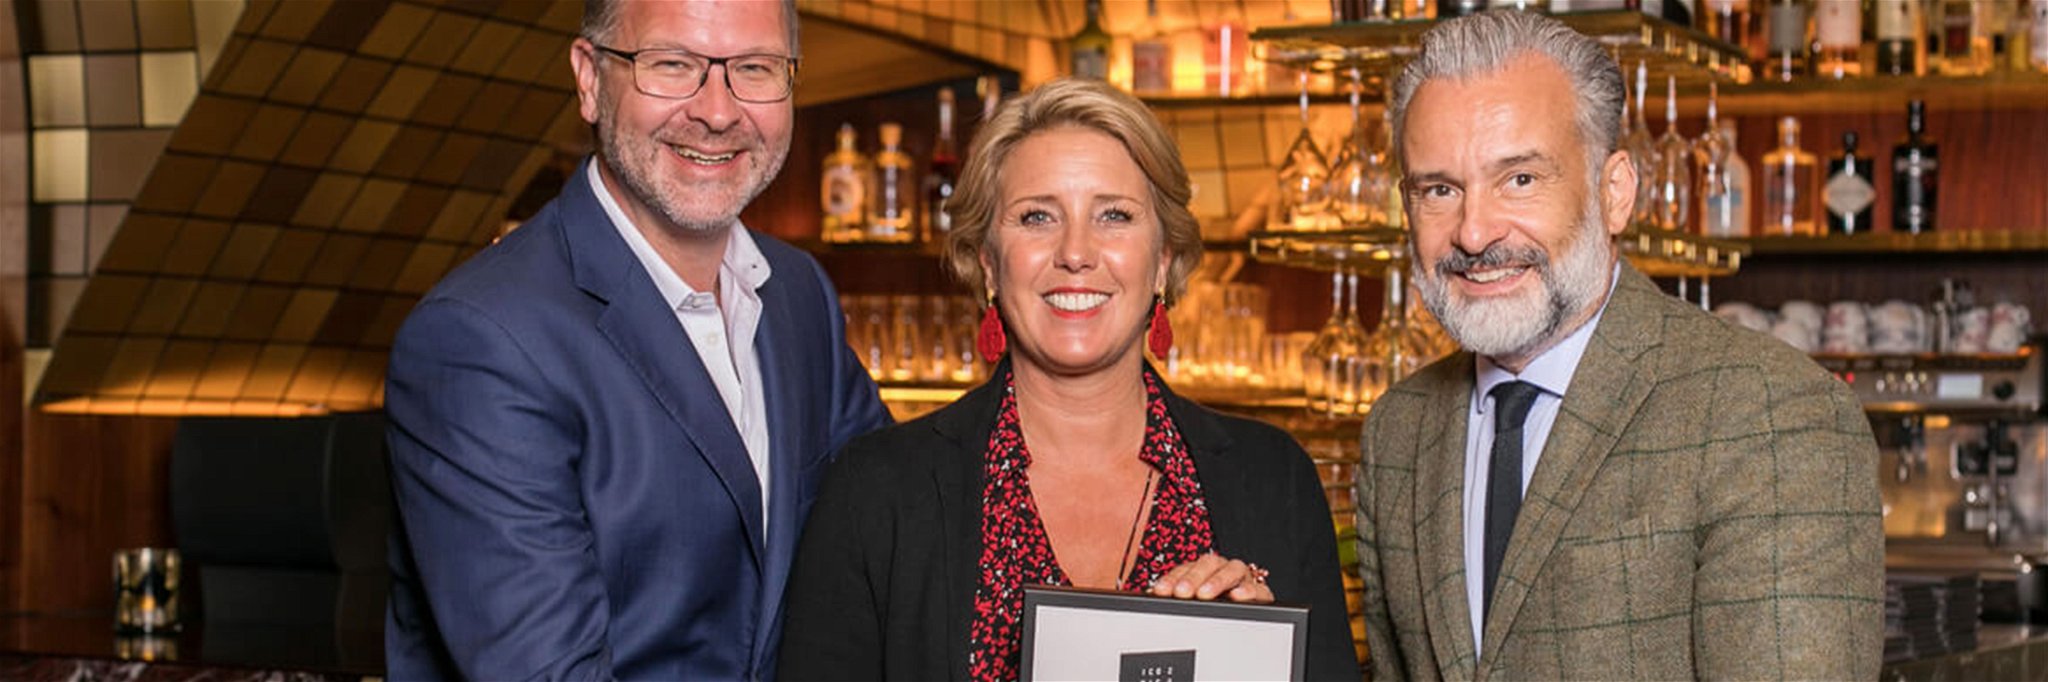 Claudia und Norbert Koller freuen sich mit Stephan Ferenczy über den Iconic Award 2019.